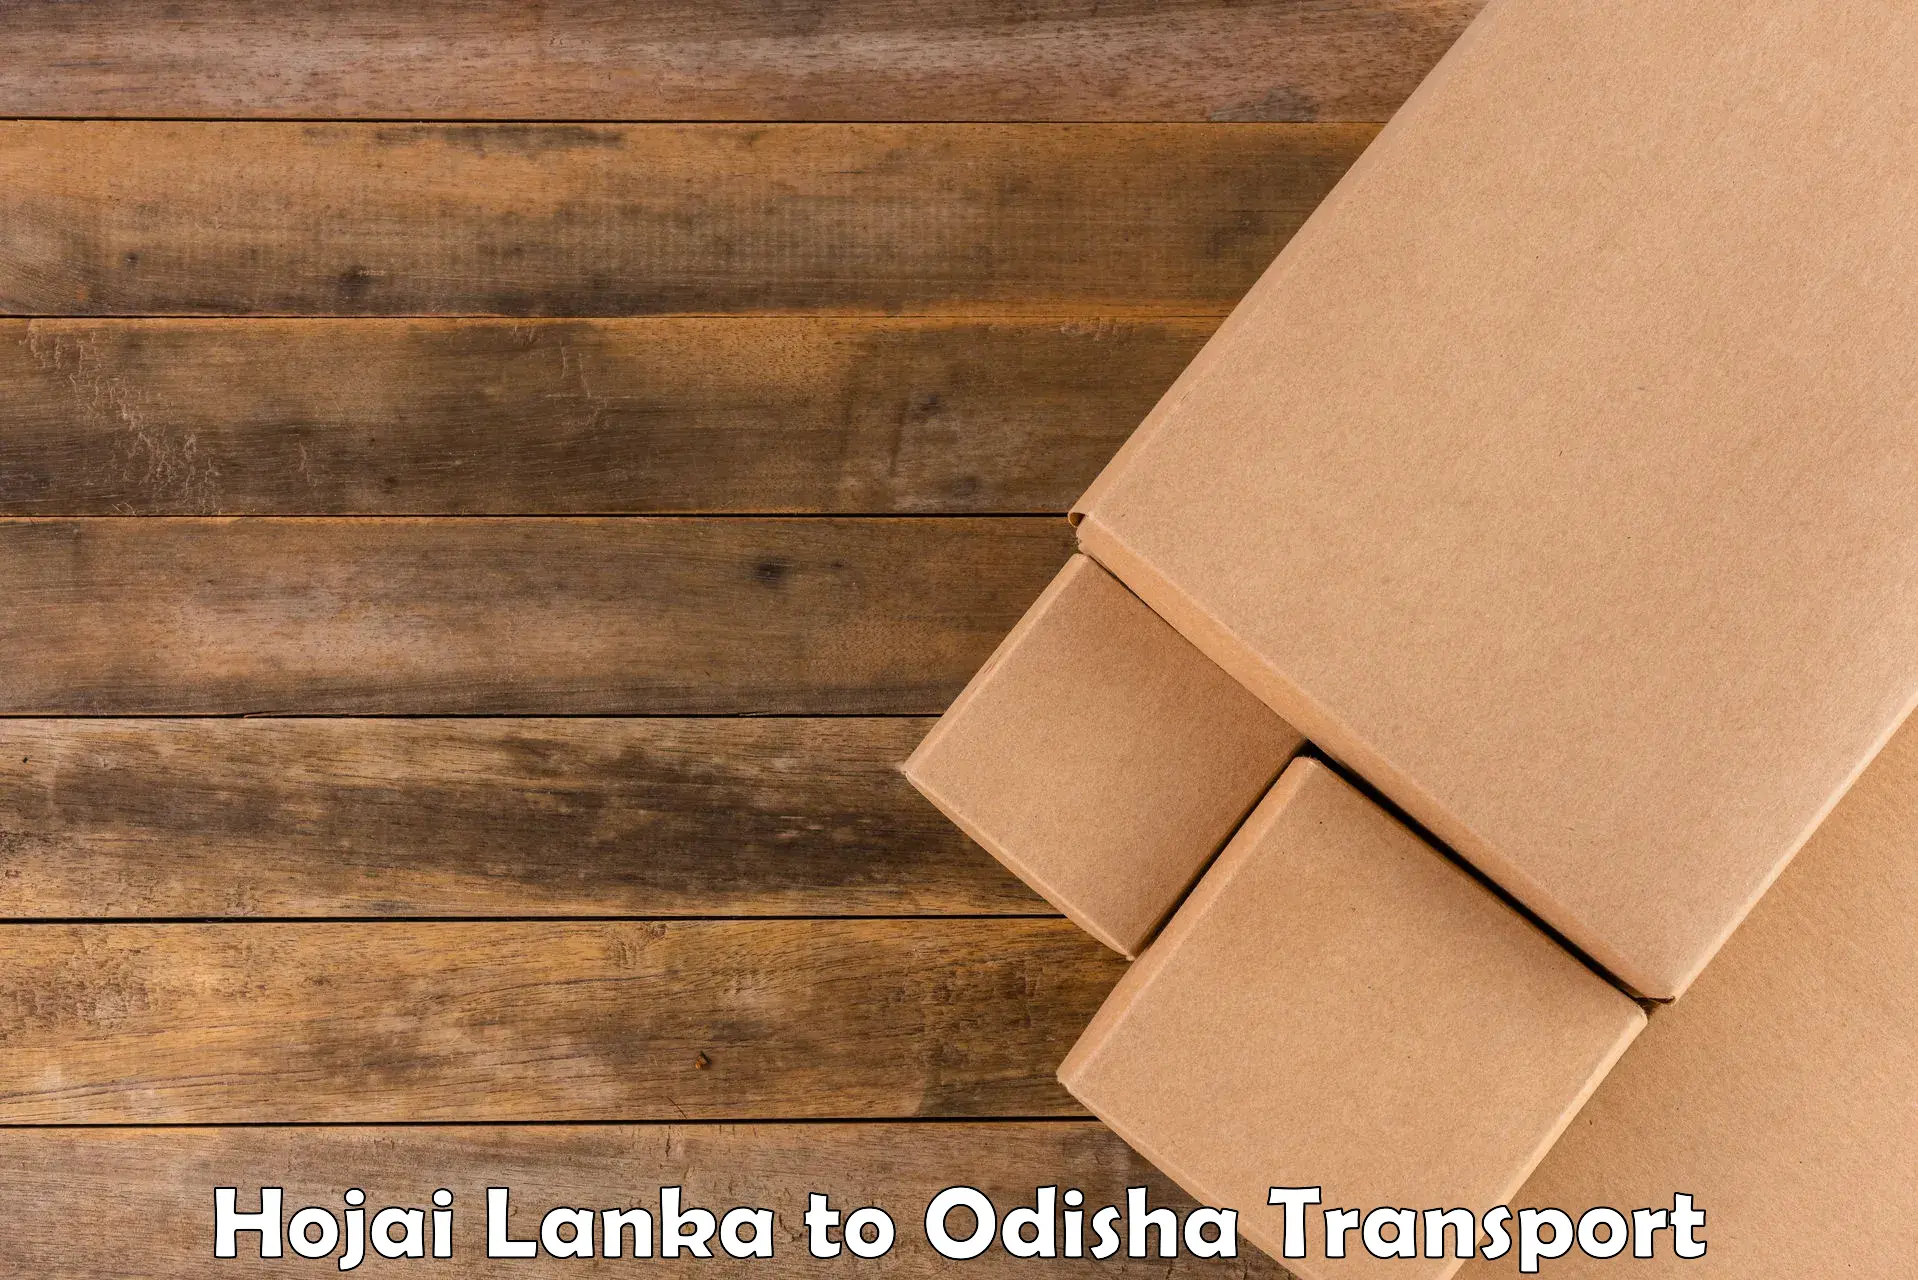 Transport shared services Hojai Lanka to Kendrapara